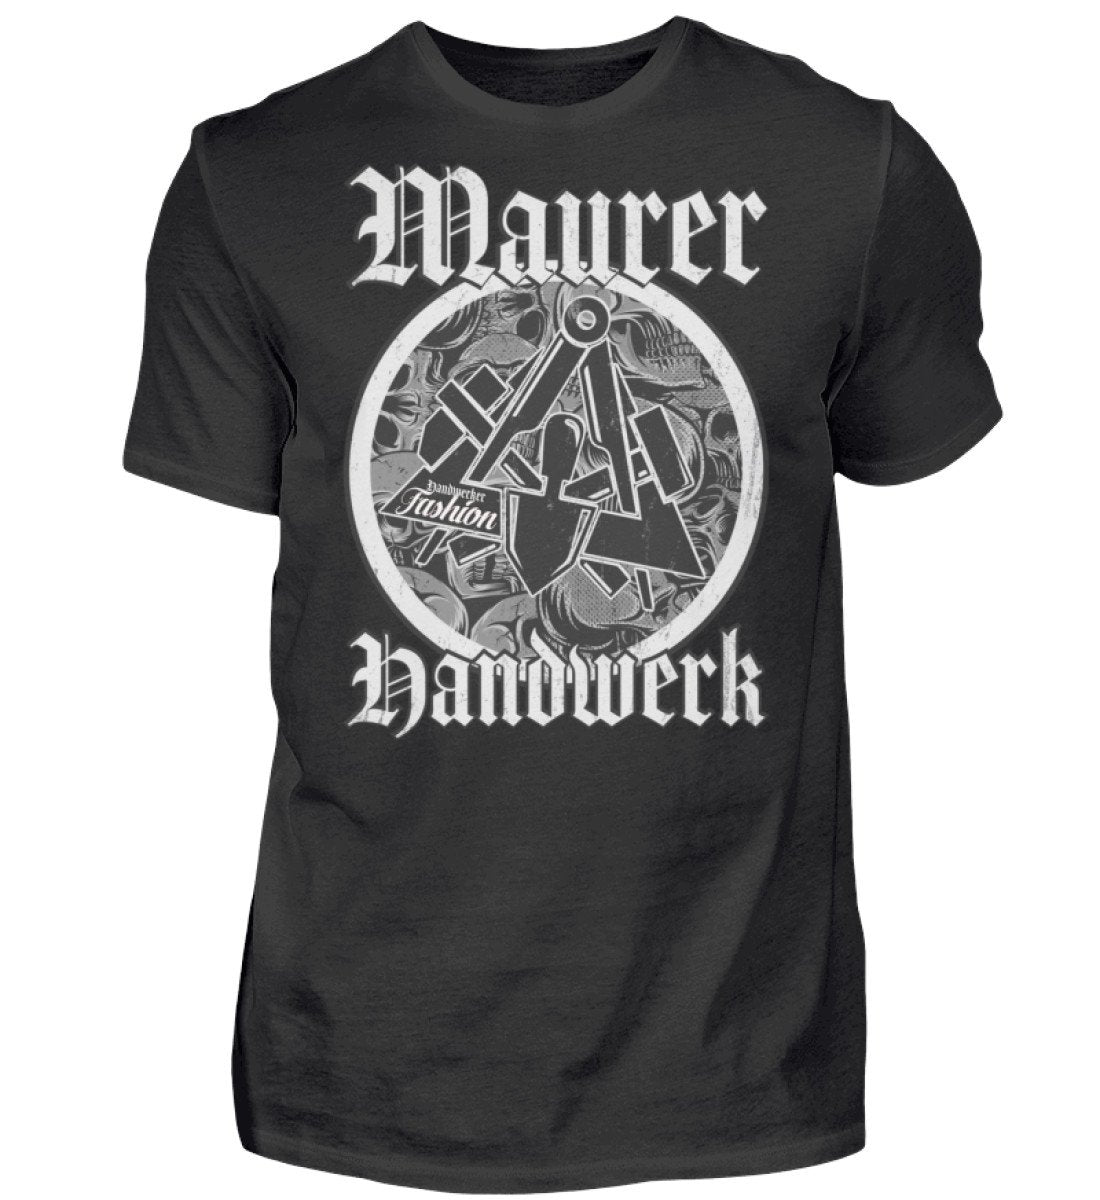 Maurer - Handwerker T-Shirt